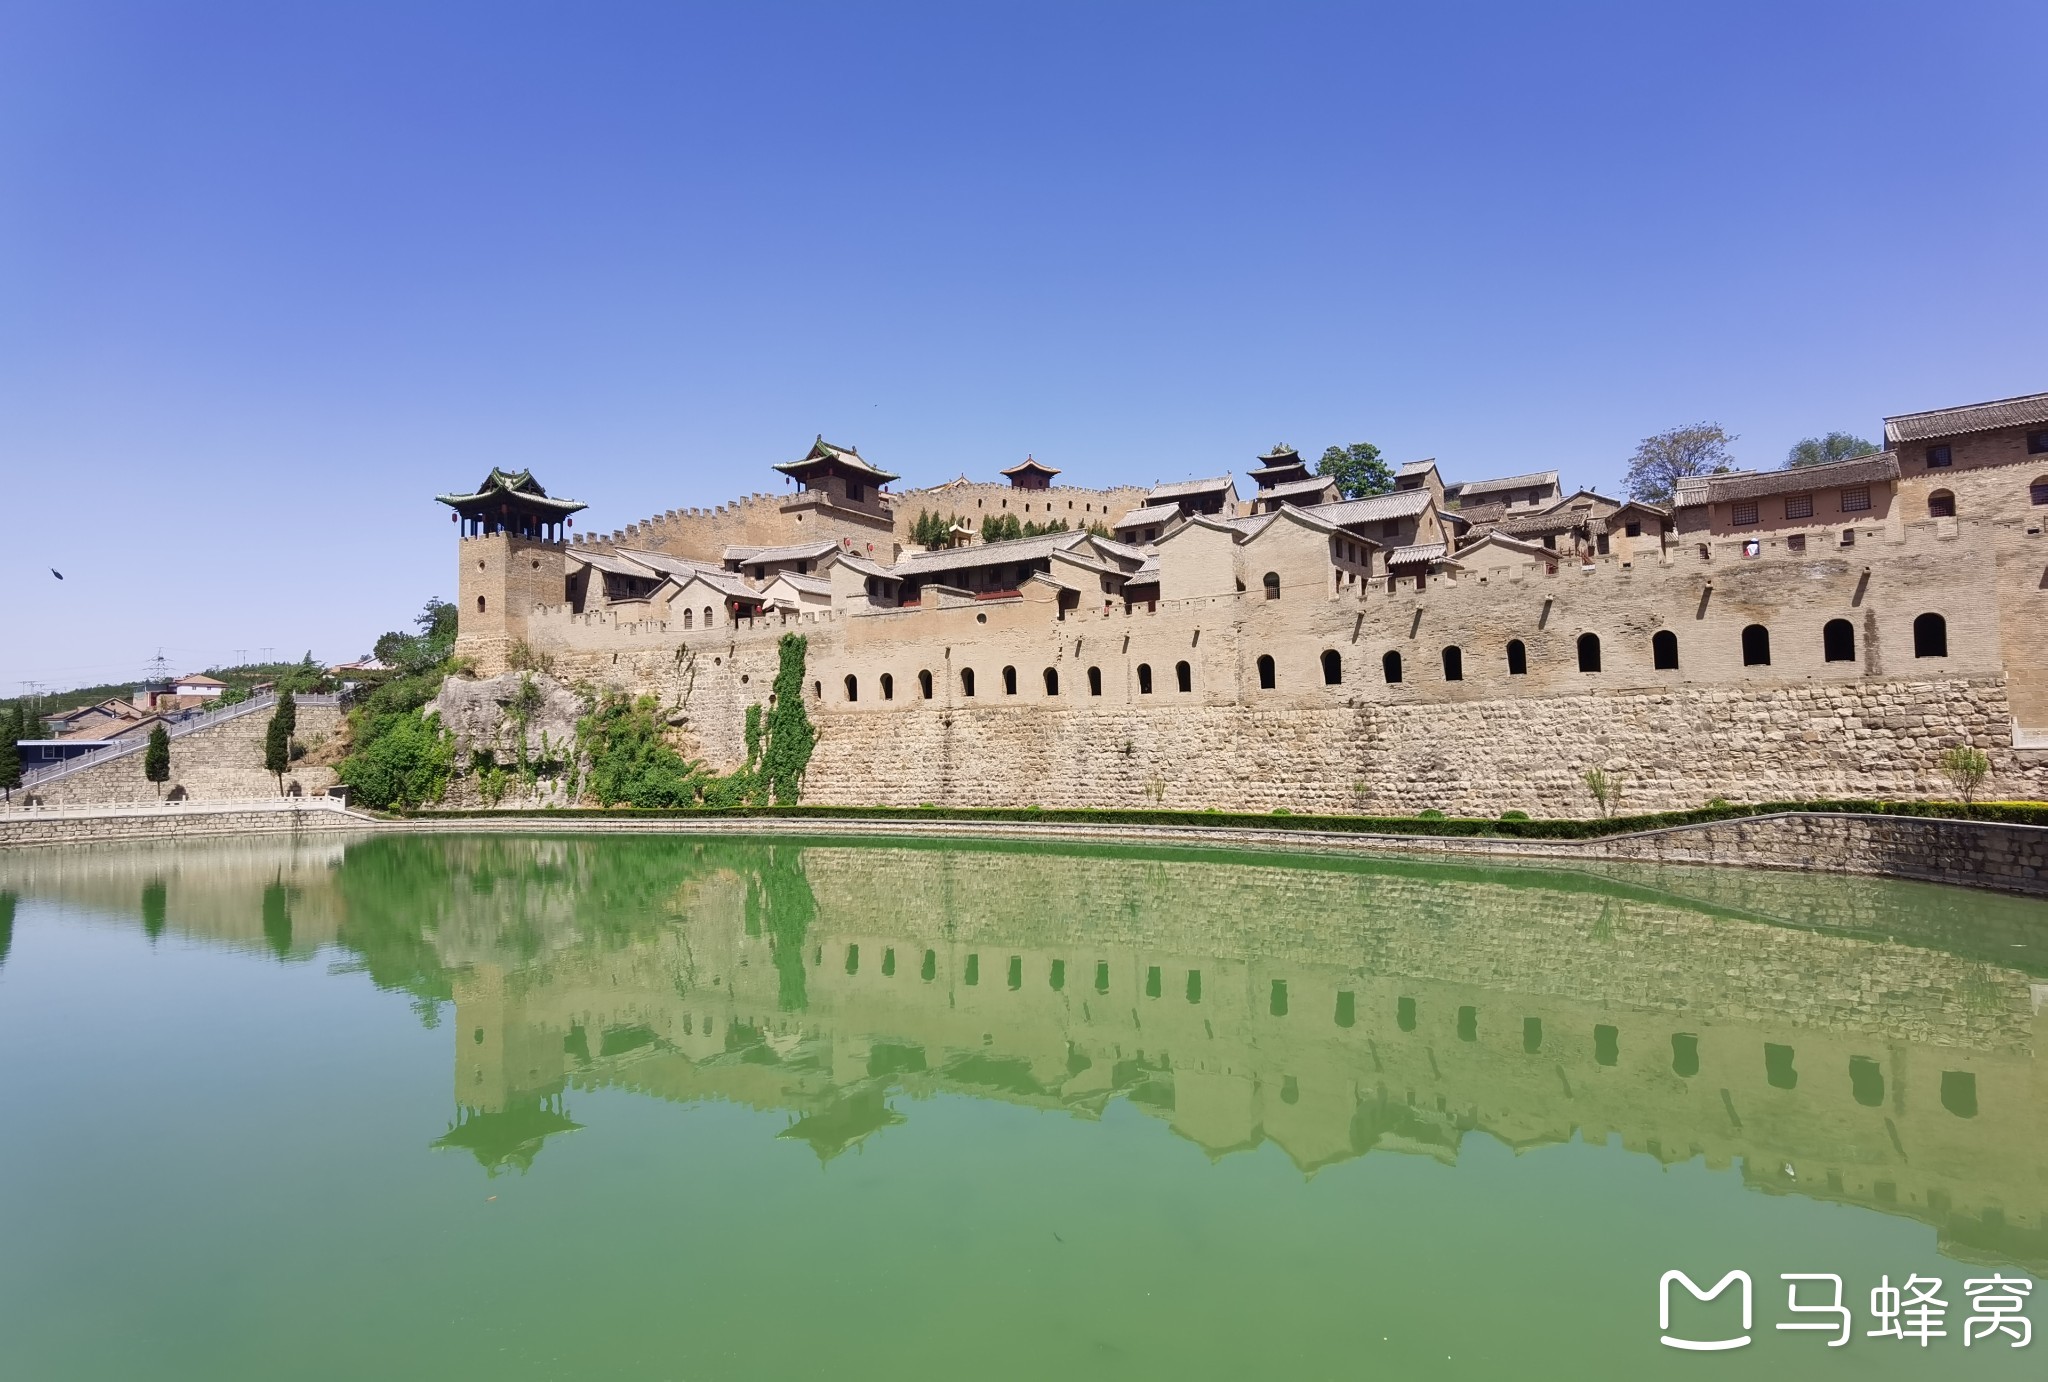 这座古城位于山西省晋城市沁水县东南方向50公里的郑村镇湘峪村